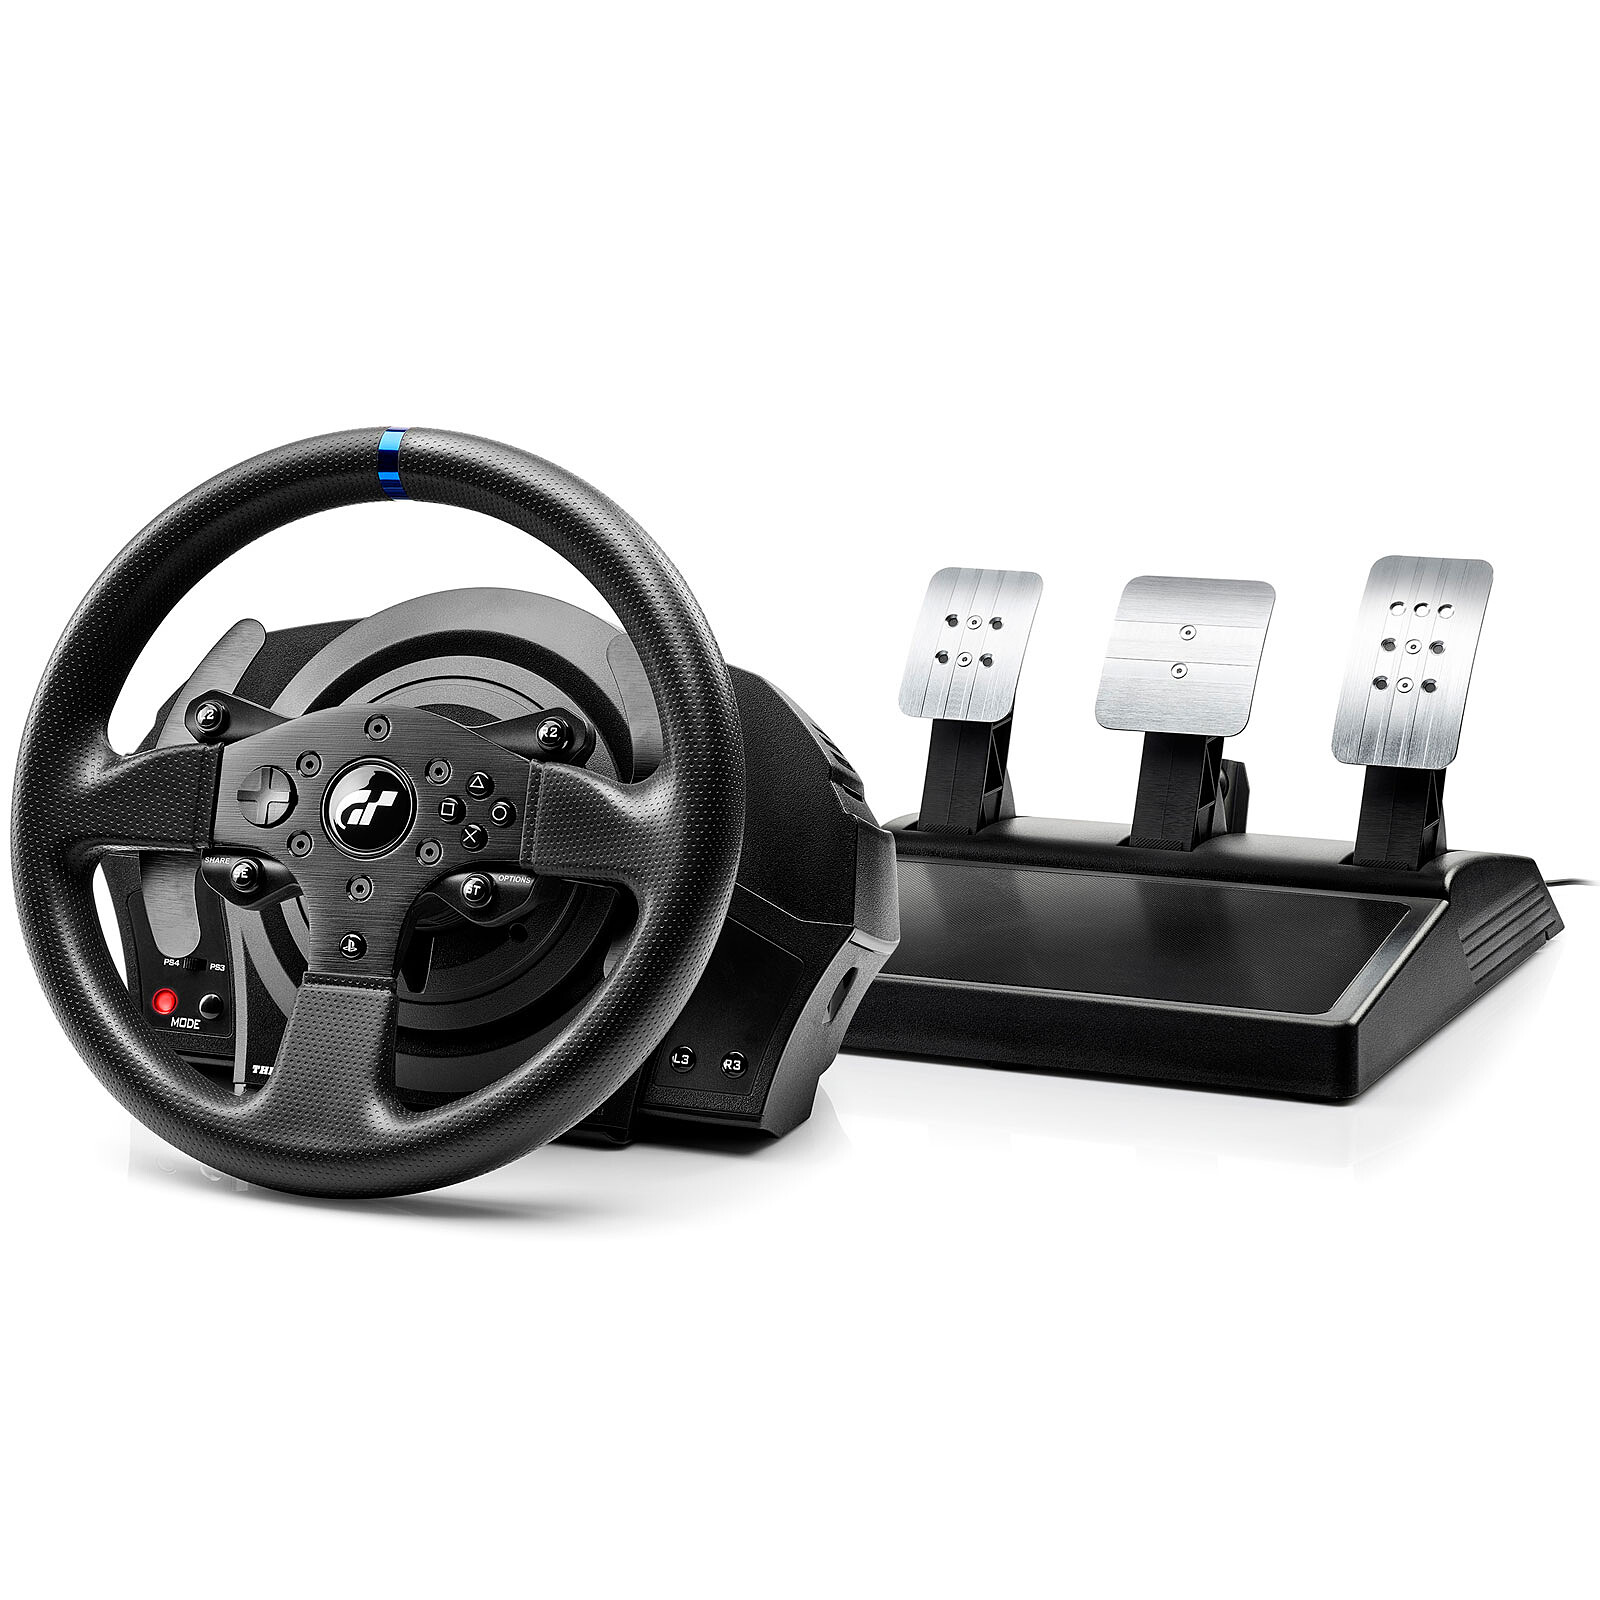 Logitech G920 Driving Force Racing Wheel - Volant PC - Garantie 3 ans LDLC  - Coin des affaires